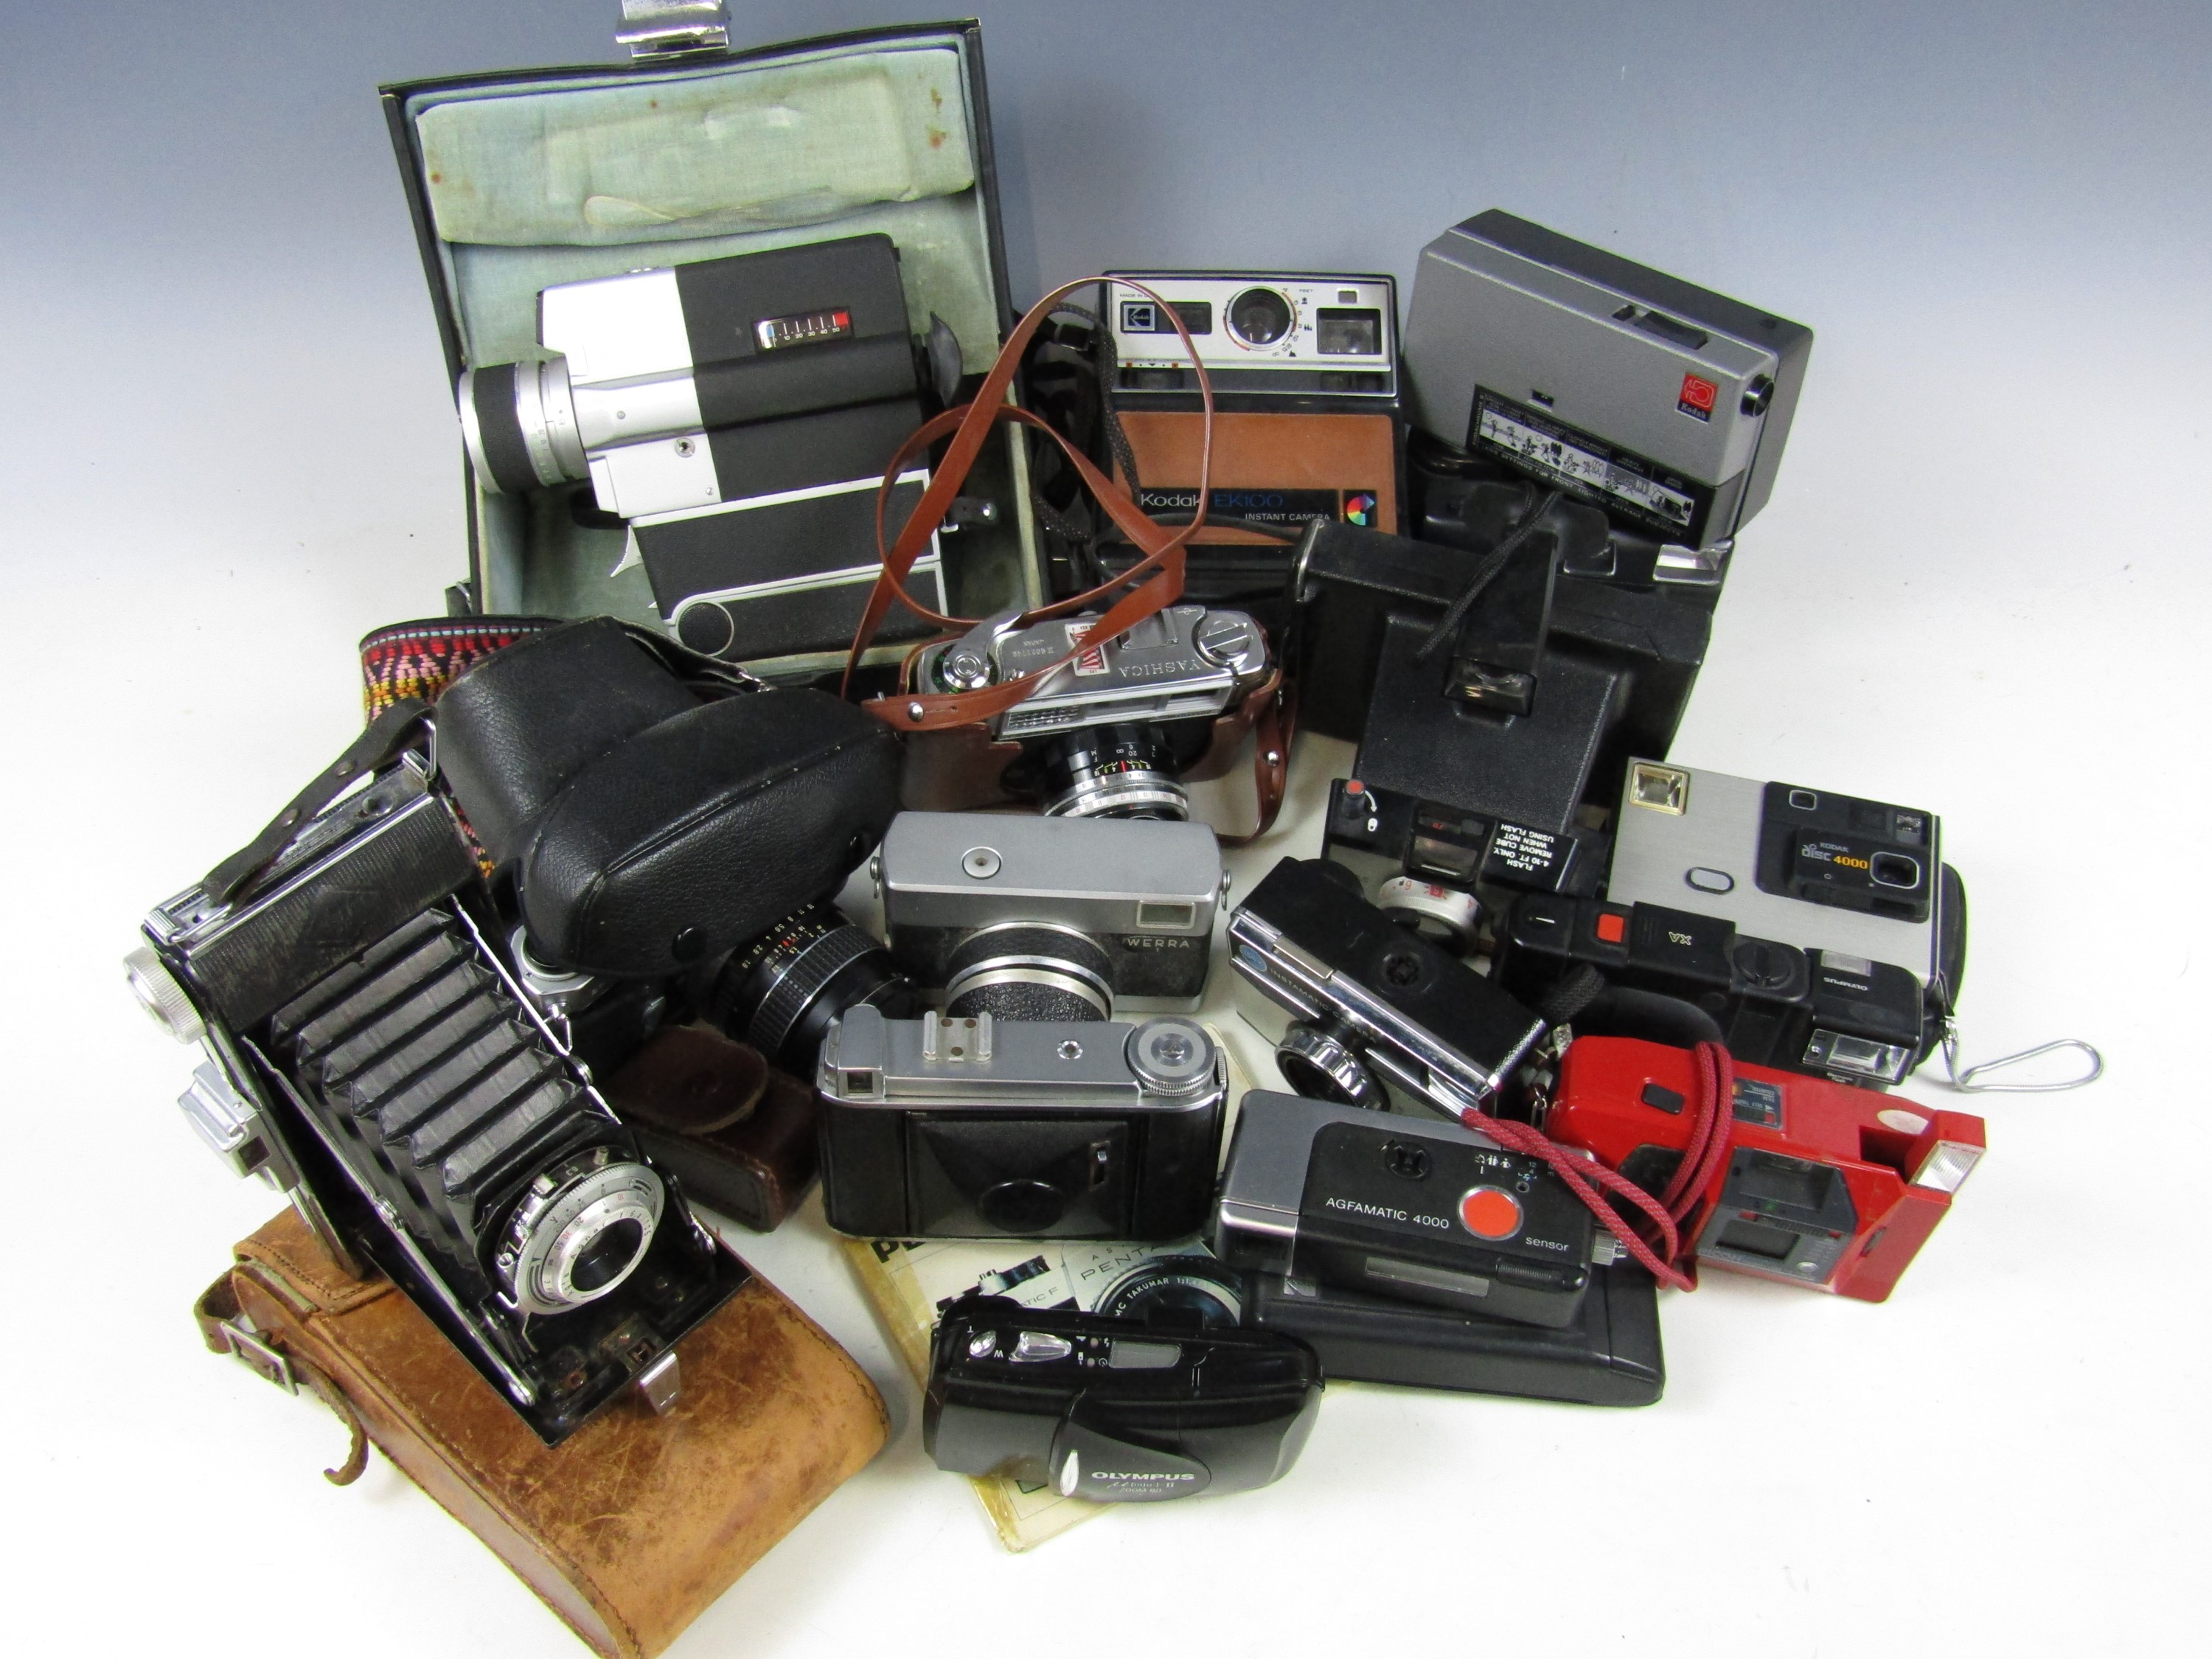 A quantity of cameras including a Kodak 155x instamatic, Kodak Retinette, Sanyo cine camera Cm400,